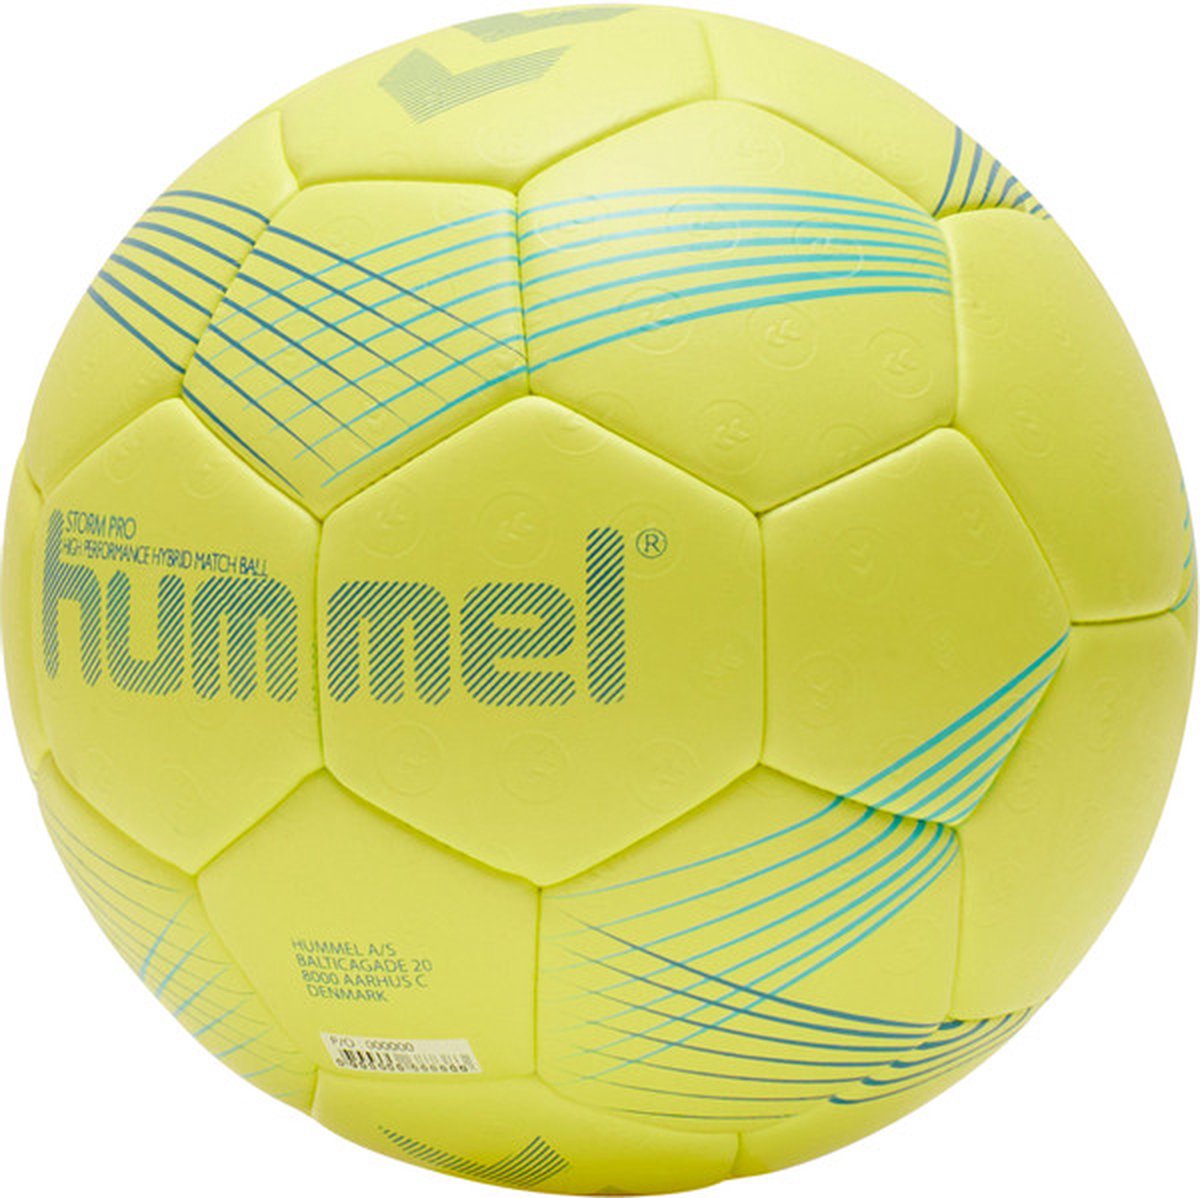 Hummel Storm Pro - Handballen - geel/blauw